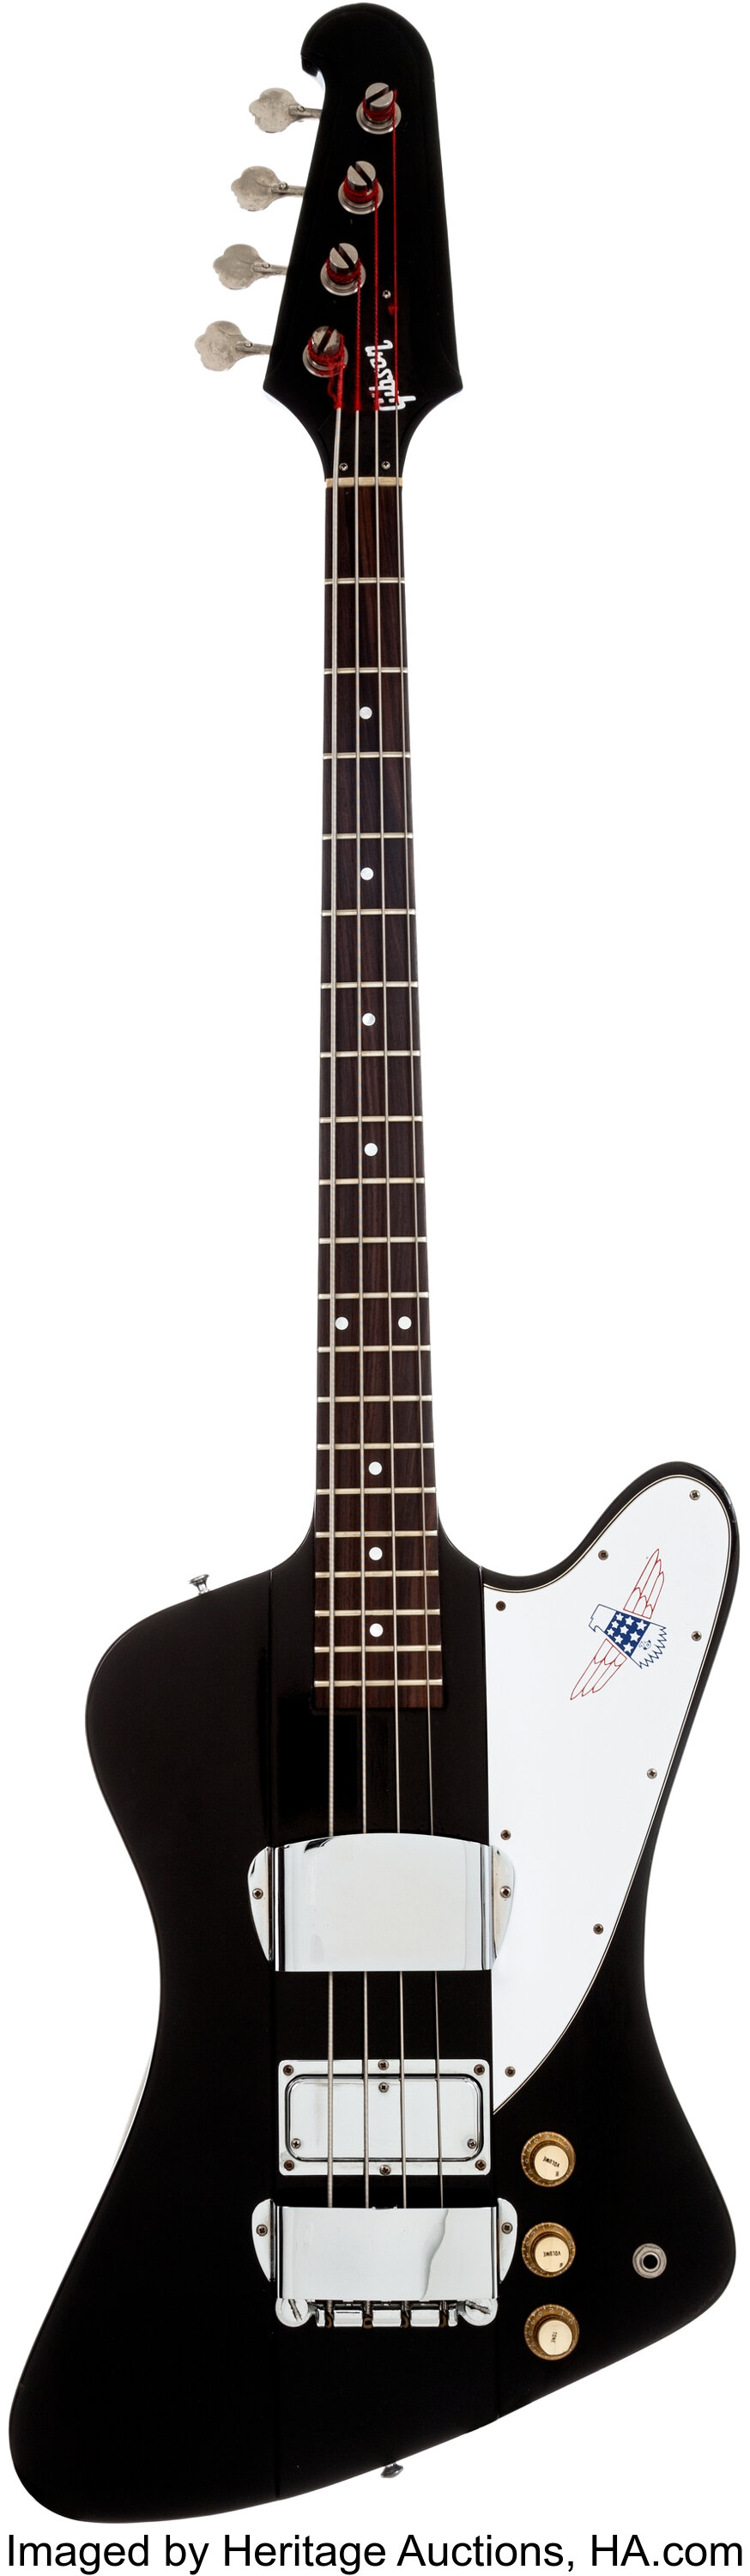 1977 Gibson Bicentennial Thunderbird IV Black Bass Guitar, Serial